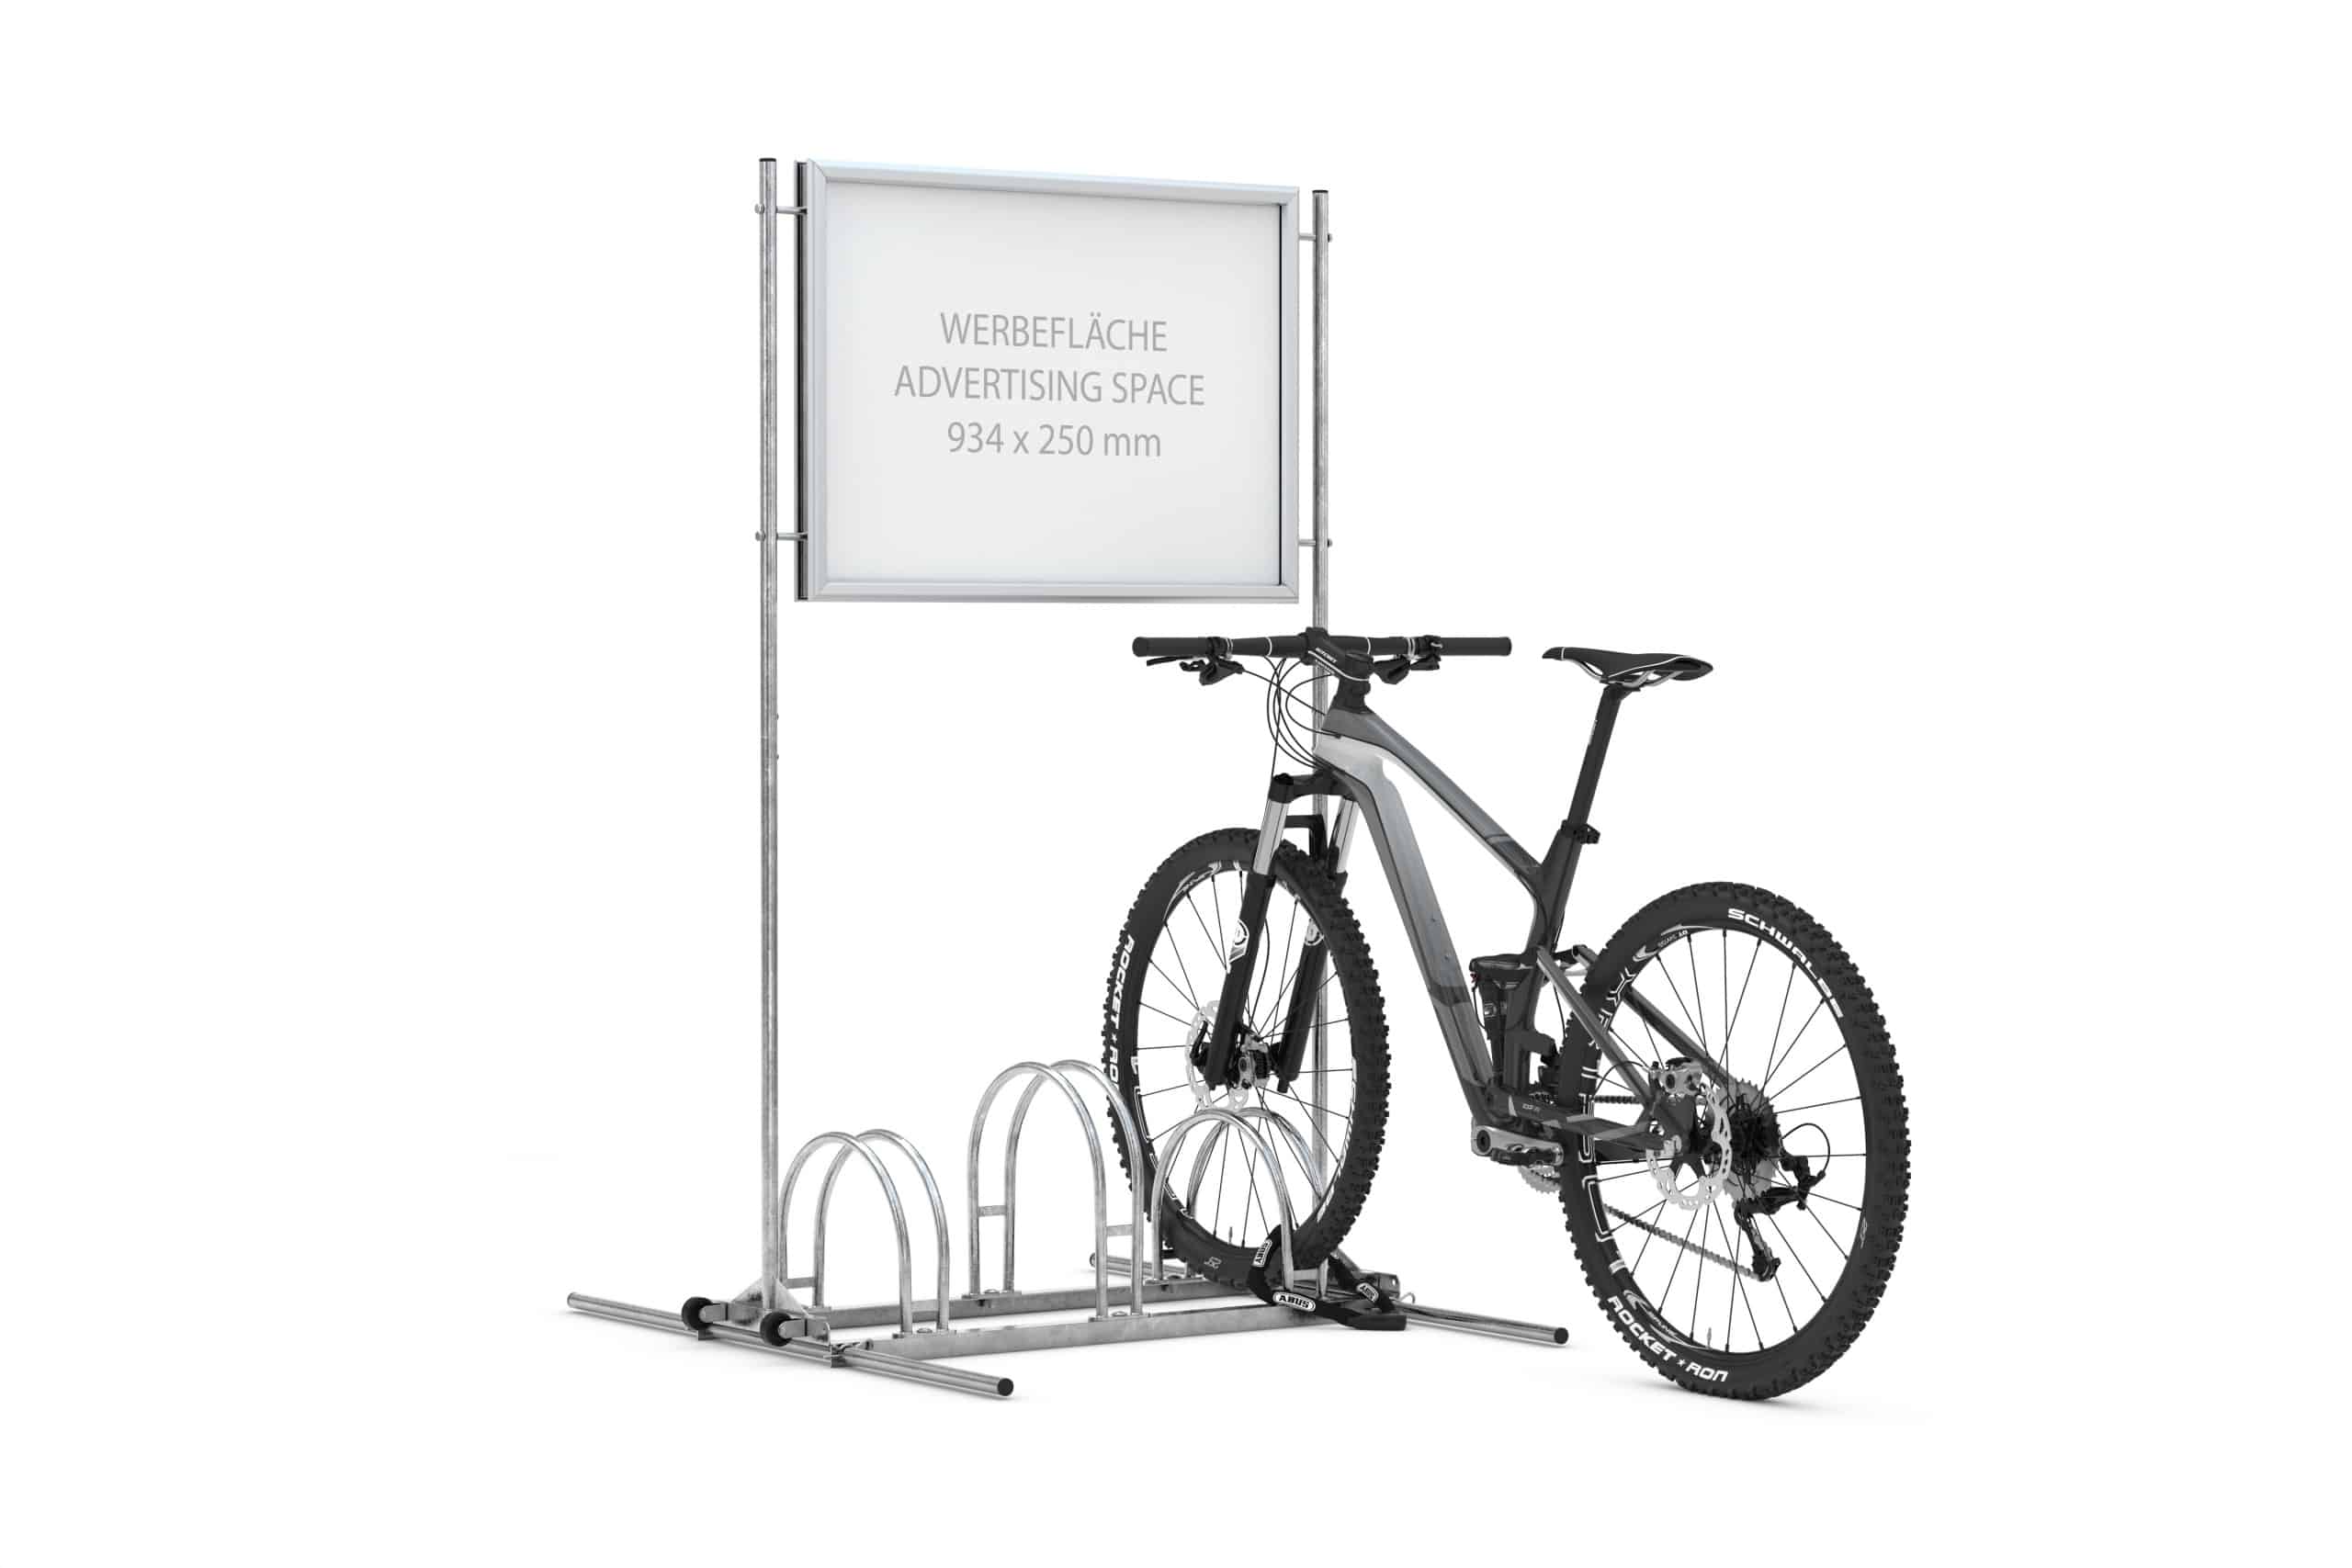 Werbefahrradständer CW 5000 mit eingestellten Fahrrädern